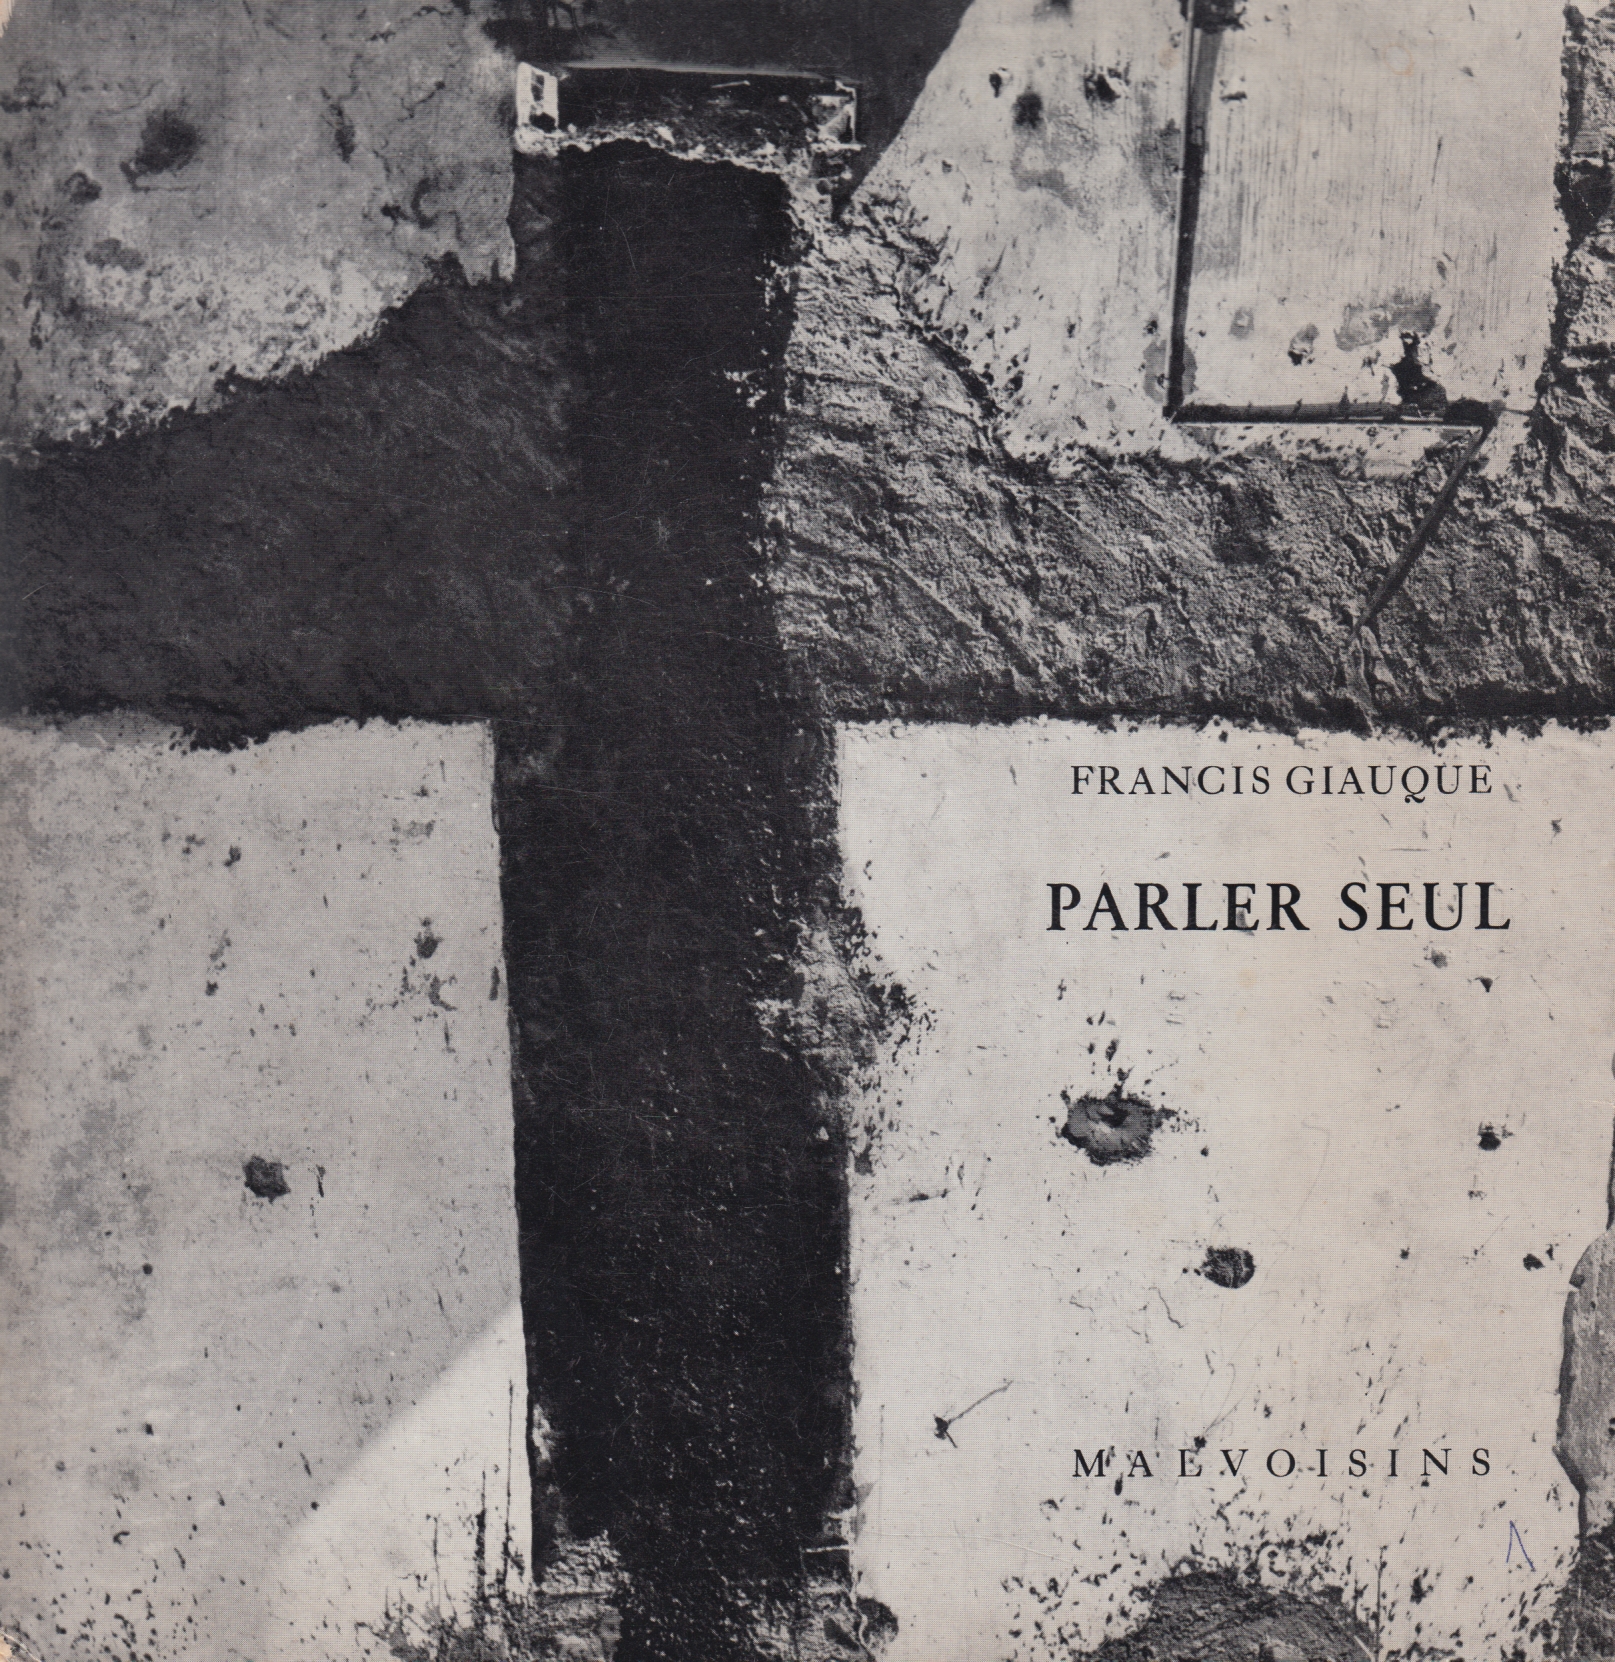 Copertina di Tristan Solier per la bella edizione di Parler seul, seguito da L’ombre et la nuit, pubblicato a Porrentuy presso le edizioni des Malvoisins nel 1969.